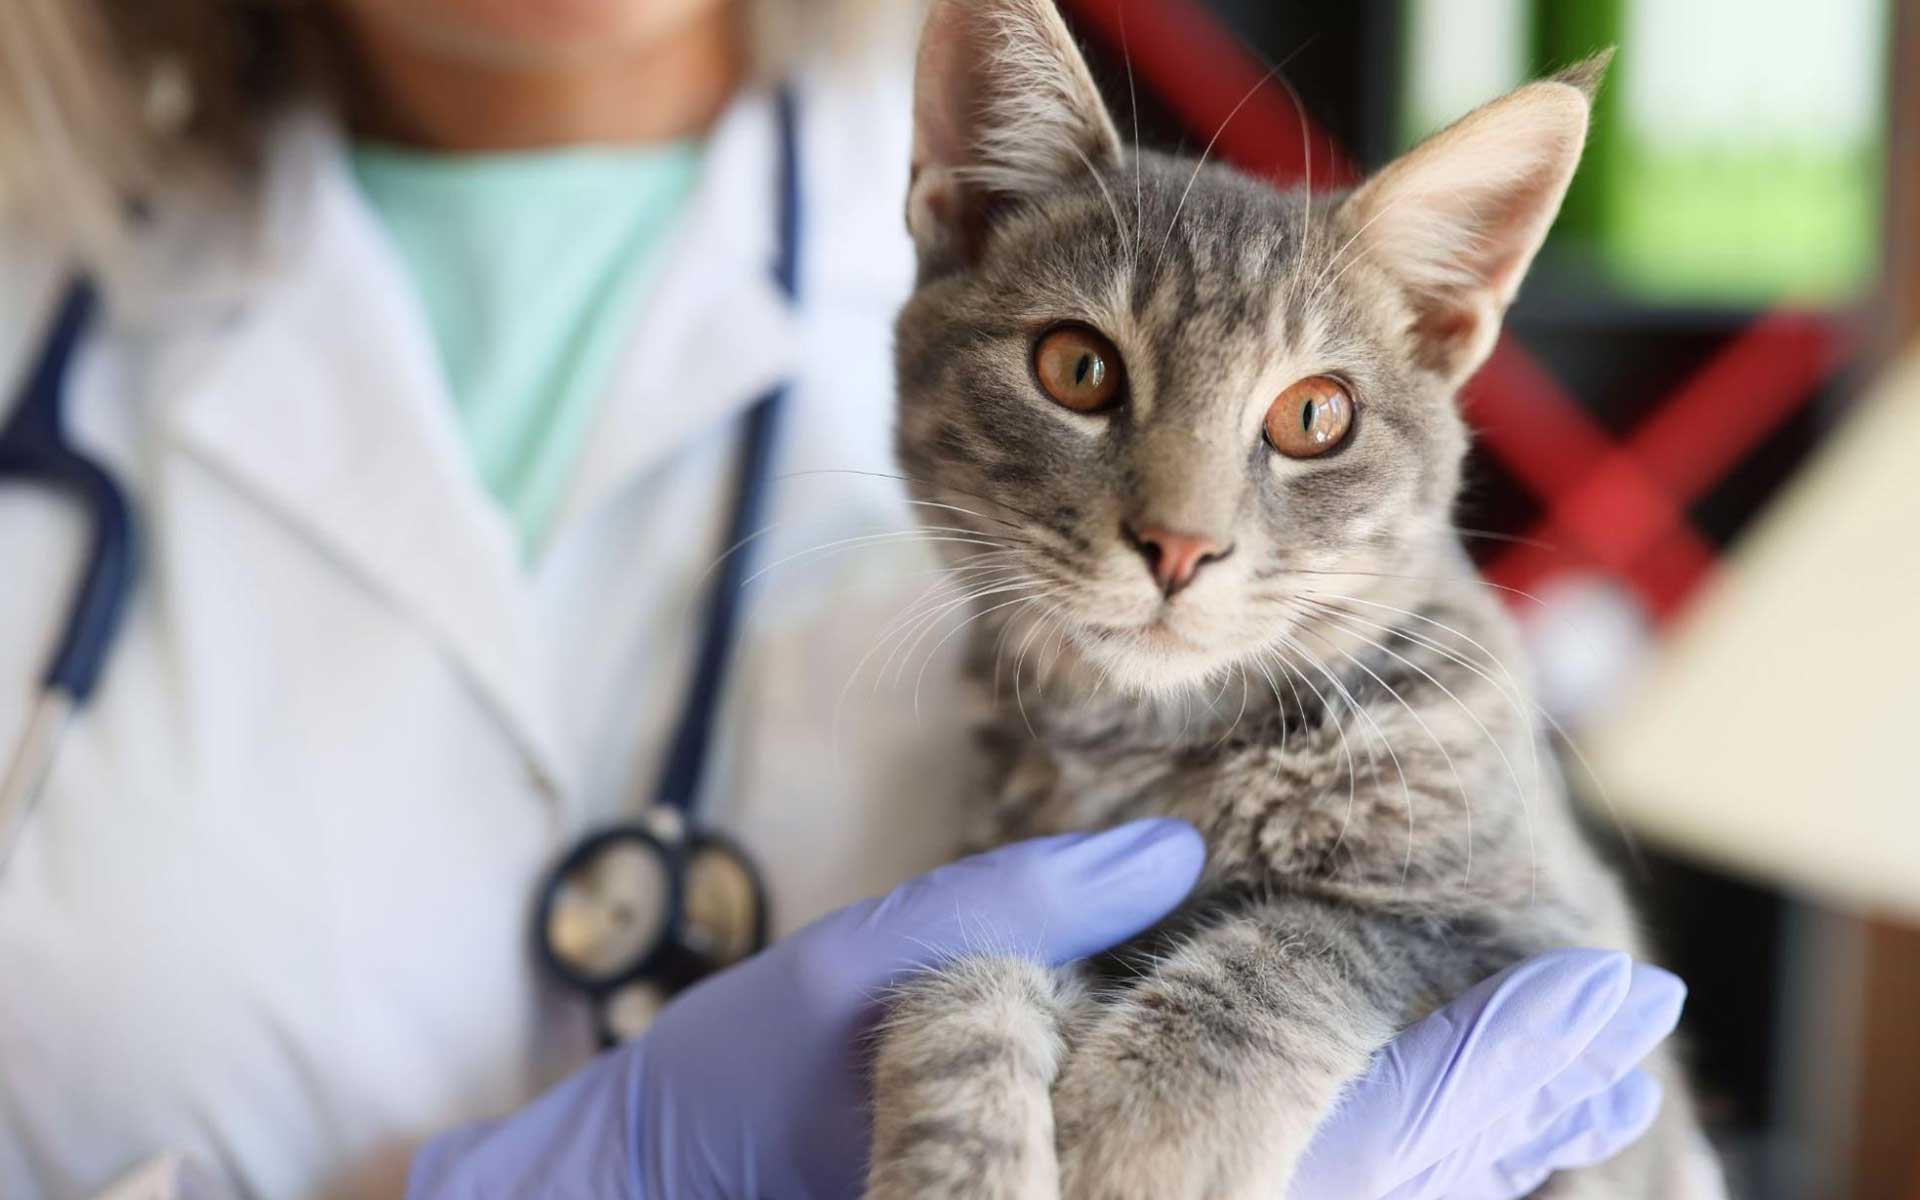 Ветеринар. Ветеринария болезни кошек. Котик в медицинской форме. Ветеринар болезни кошек. Руки ветеринаров